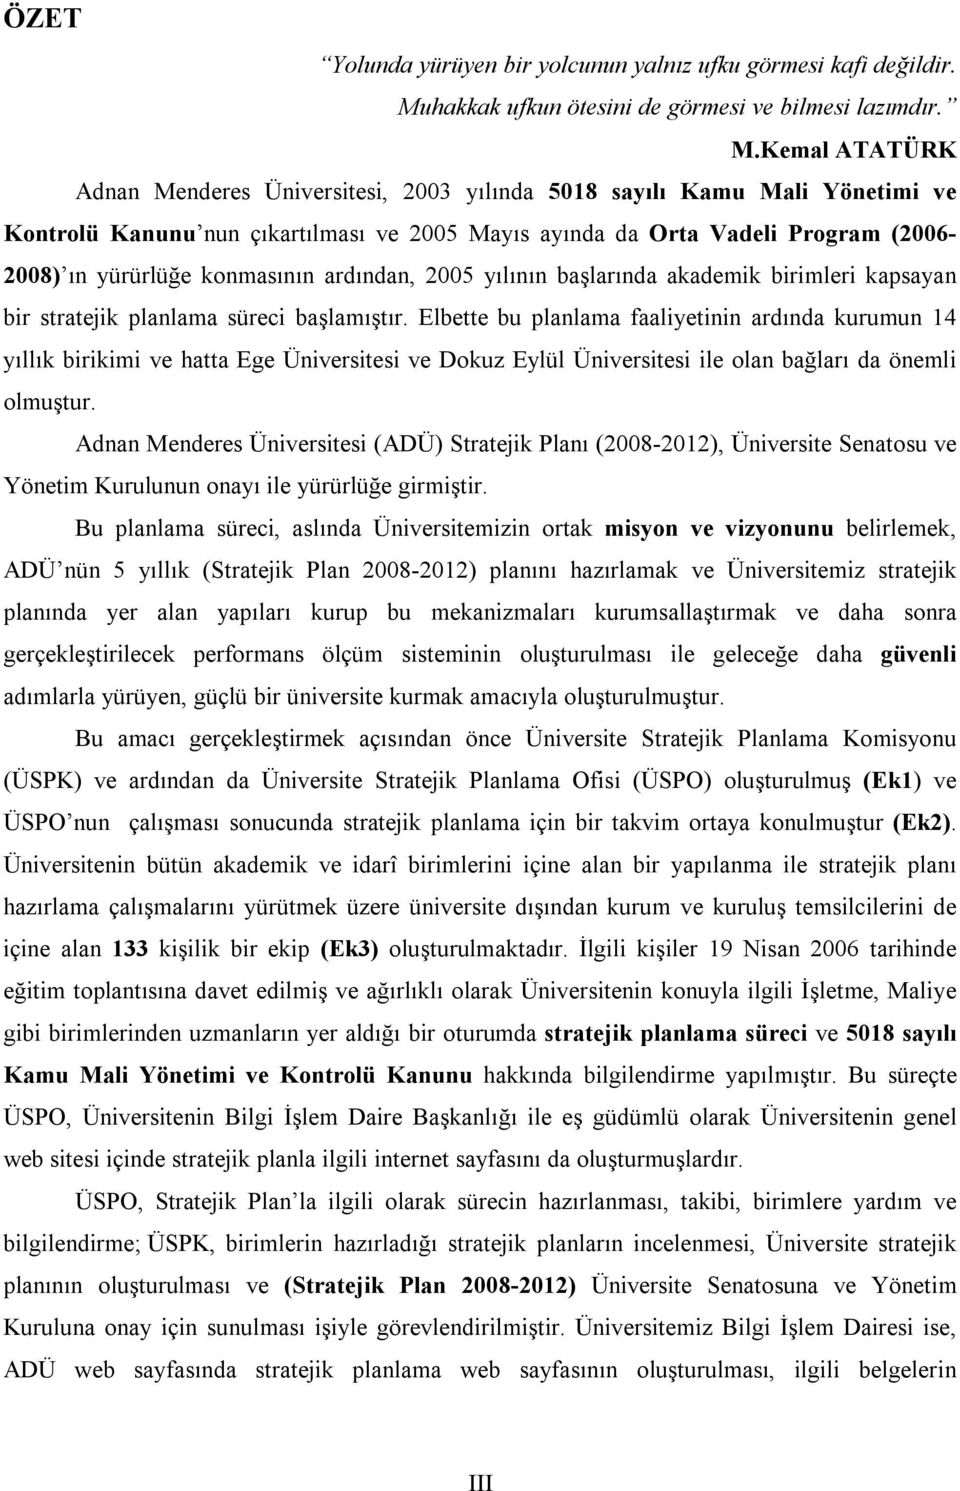 Kemal ATATÜRK Adnan Menderes Üniversitesi, 2003 yılında 5018 sayılı Kamu Mali Yönetimi ve Kontrolü Kanunu nun çıkartılması ve 2005 Mayıs ayında da Orta Vadeli Program (2006-2008) ın yürürlüğe